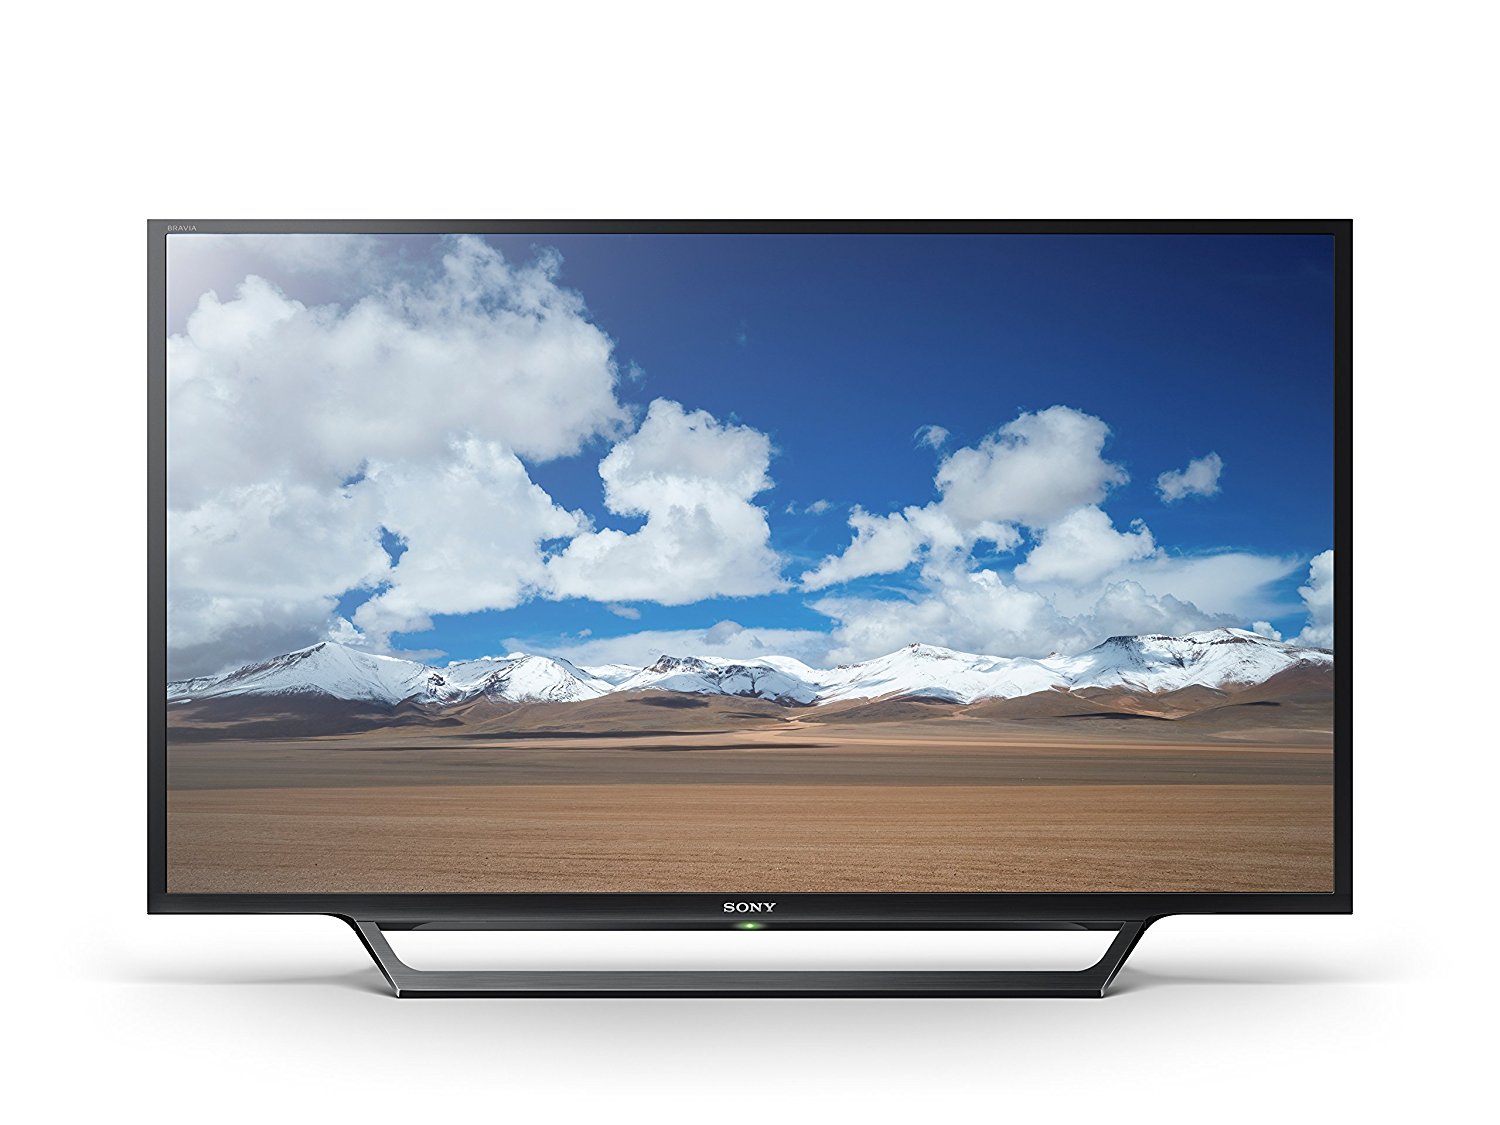 Sony KDL32W600D 32-Inch Built-In Wi-Fi HD Smart TV